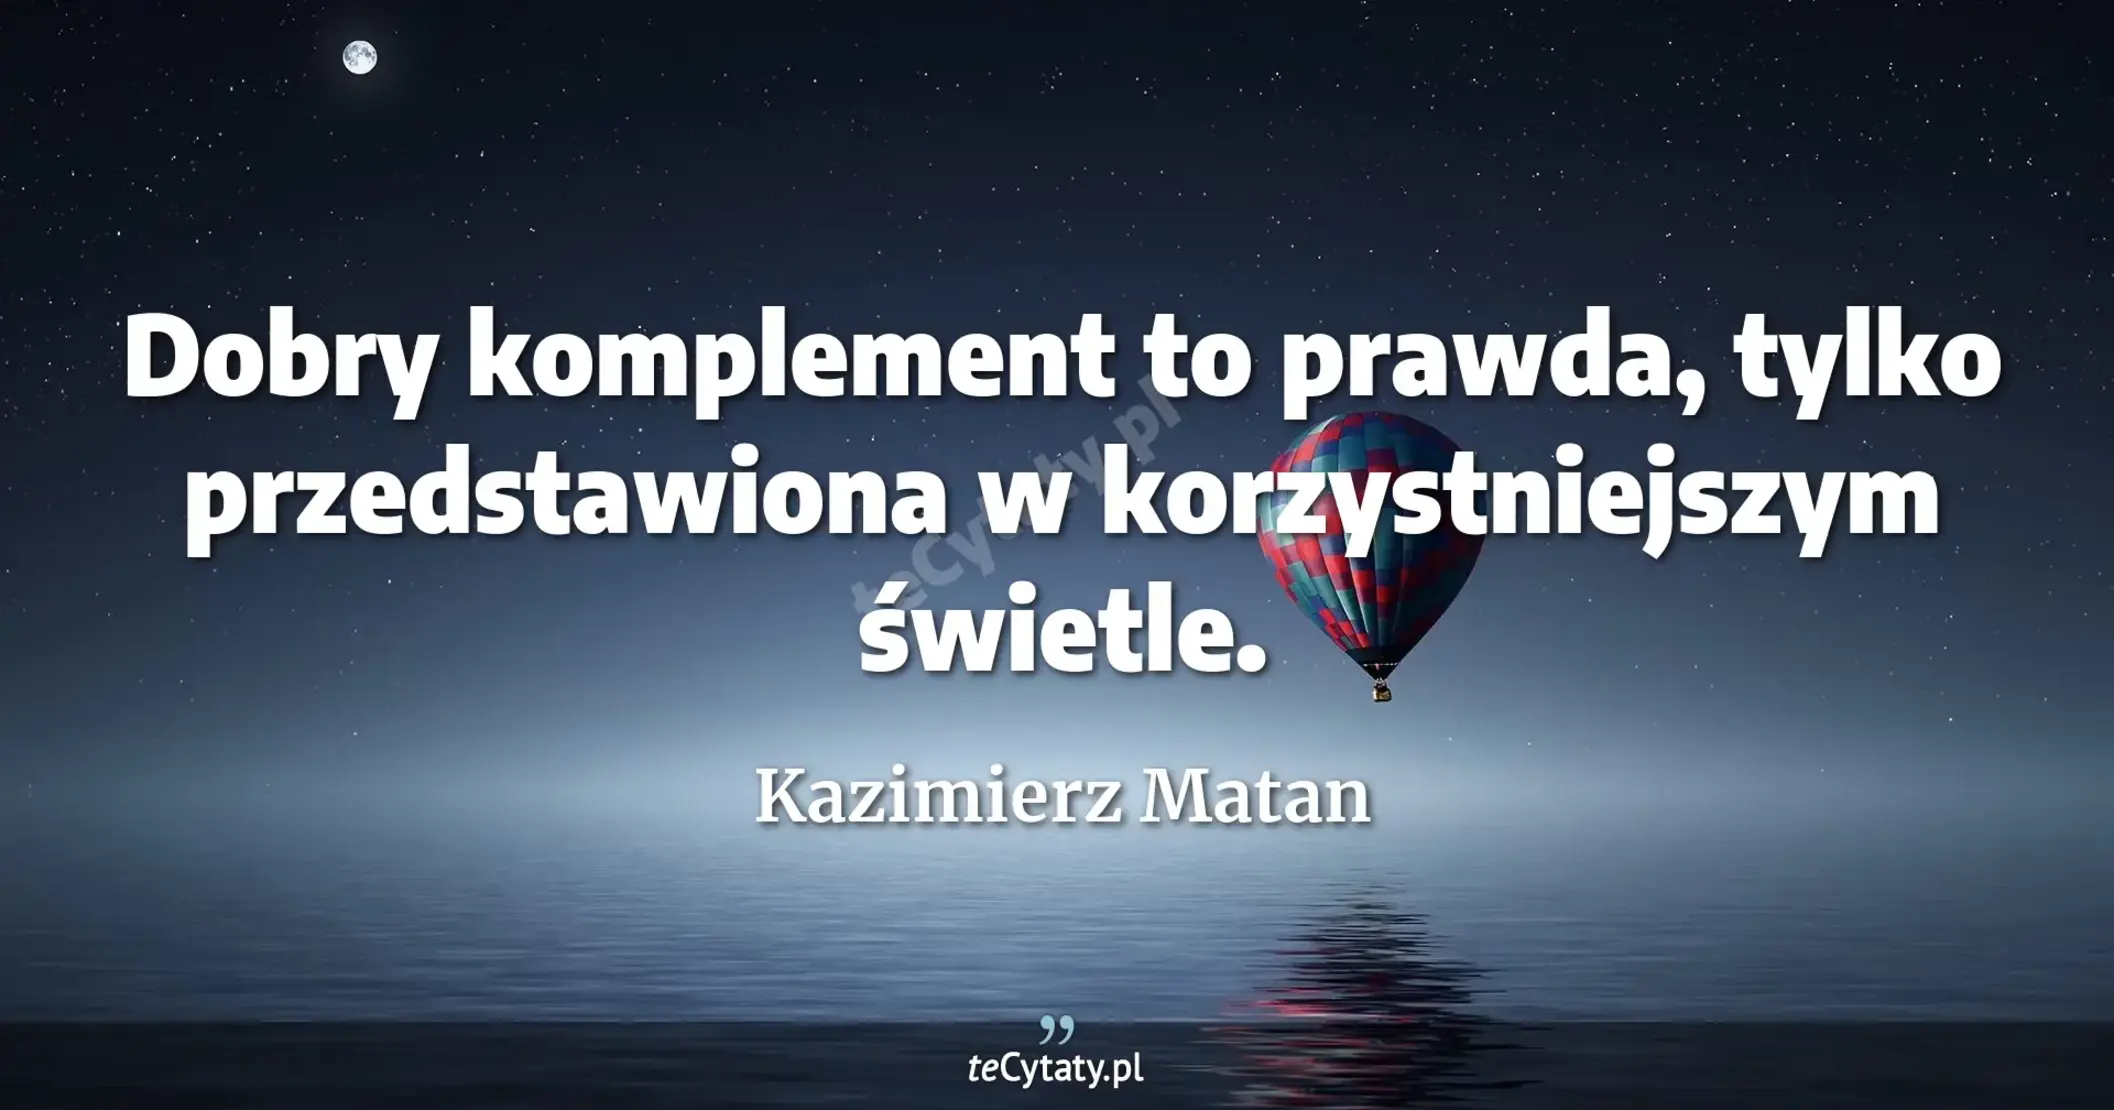 Dobry komplement to prawda, tylko przedstawiona w korzystniejszym świetle. - Kazimierz Matan